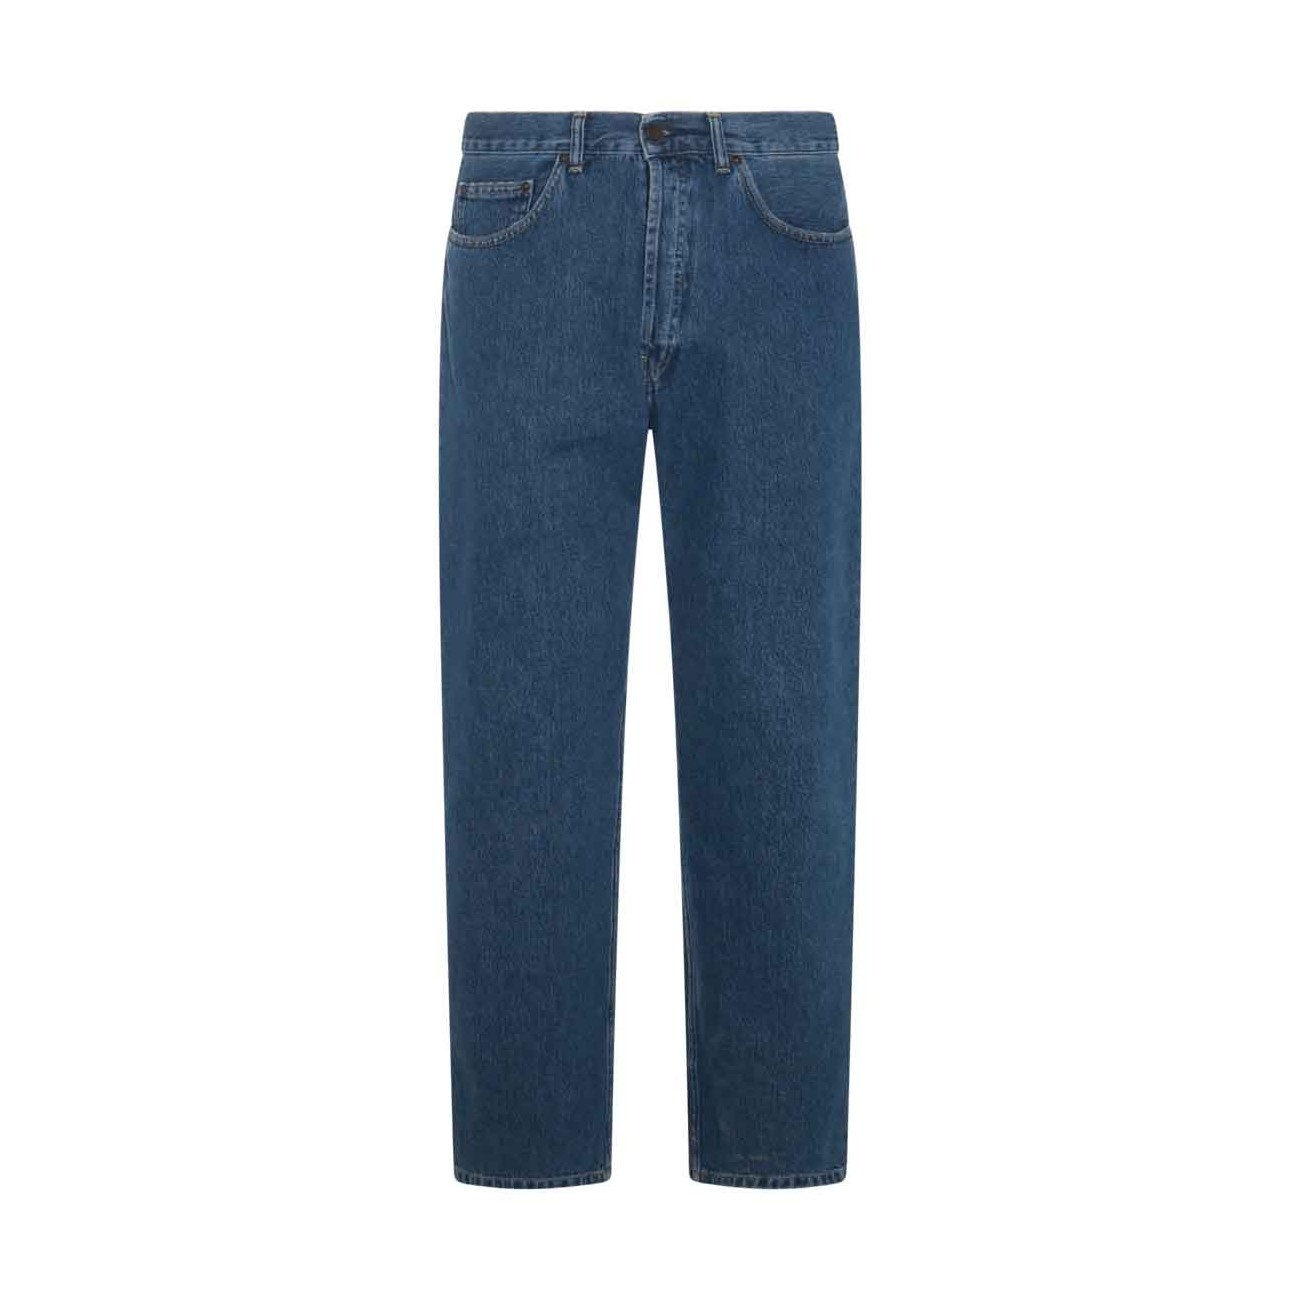 blue cotton denim jeans - 1